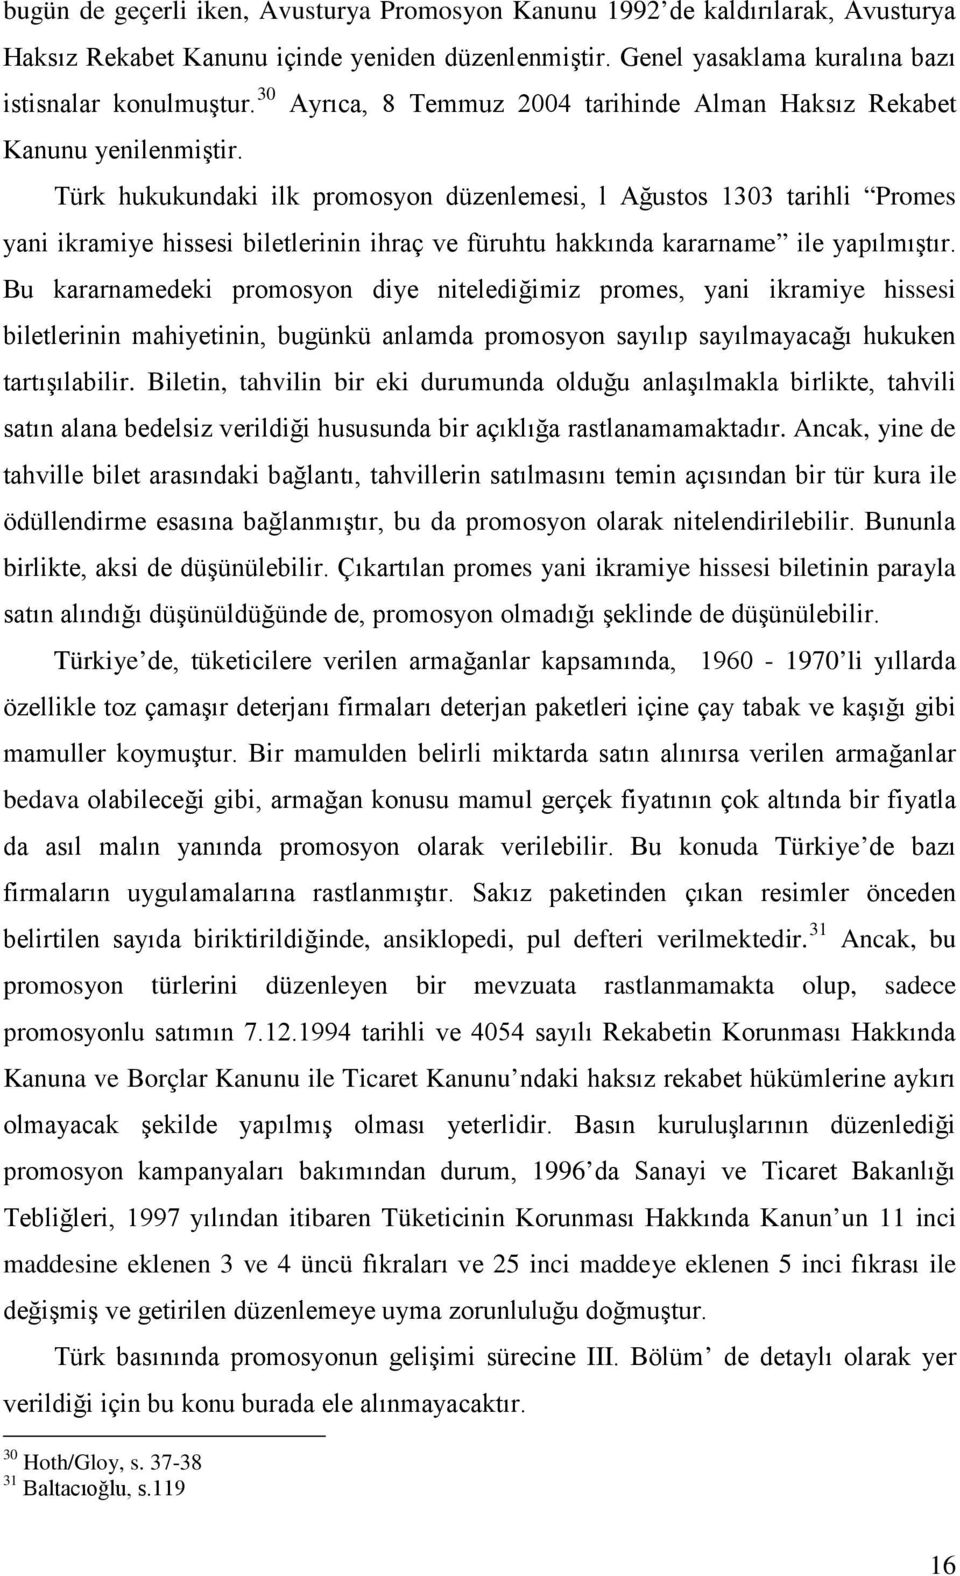 Ayrıca, 8 Temmuz 2004 tarihinde Alman Haksız Rekabet Türk hukukundaki ilk promosyon düzenlemesi, l Ağustos 1303 tarihli Promes yani ikramiye hissesi biletlerinin ihraç ve füruhtu hakkında kararname